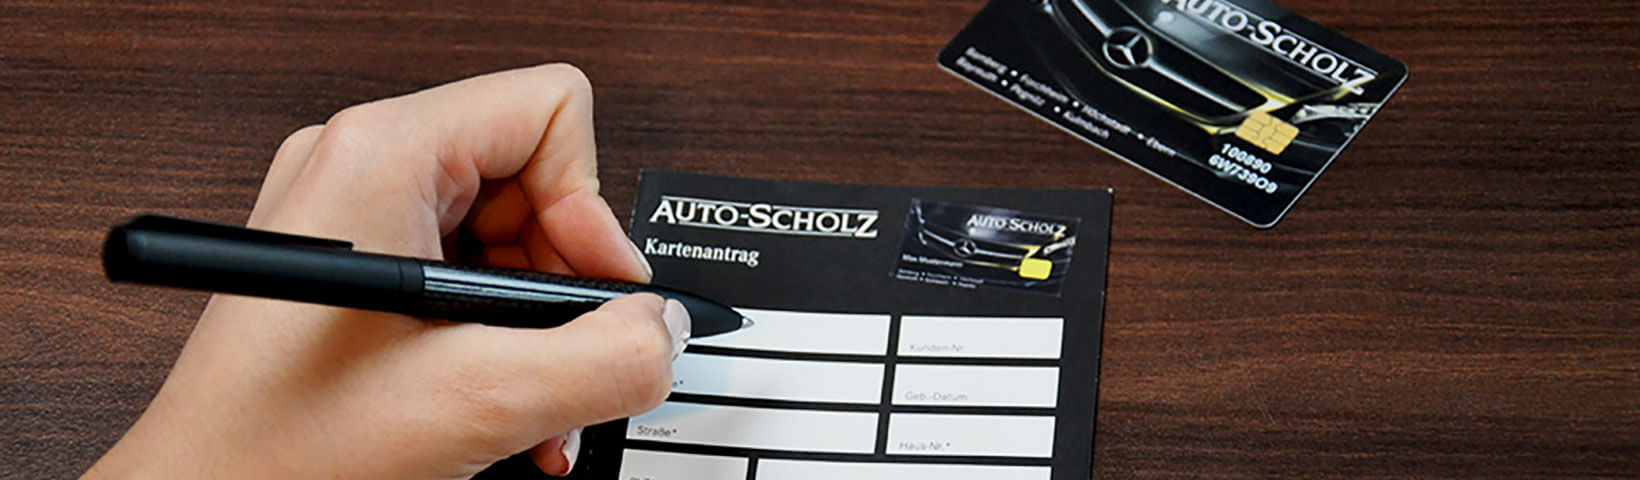  Auto-Scholz-Kundenkarte_Teilnahmebedingungen_Header.jpg